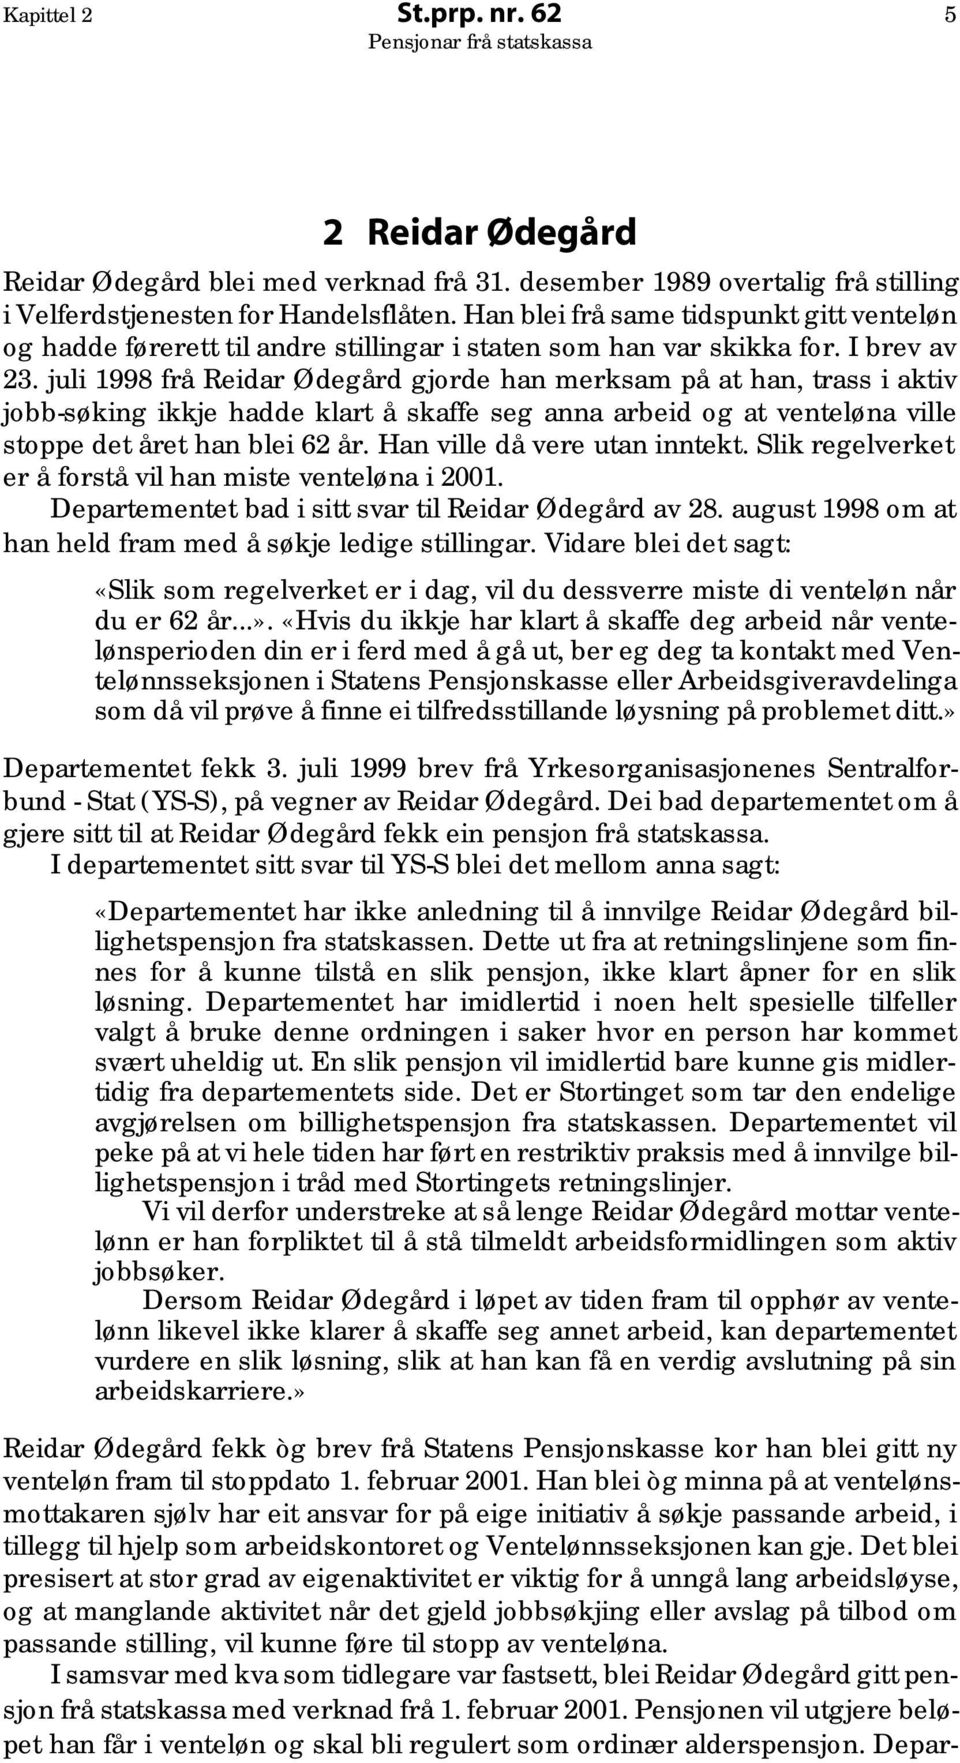 juli 1998 frå Reidar Ødegård gjorde han merksam på at han, trass i aktiv jobb-søking ikkje hadde klart å skaffe seg anna arbeid og at venteløna ville stoppe det året han blei 62 år.